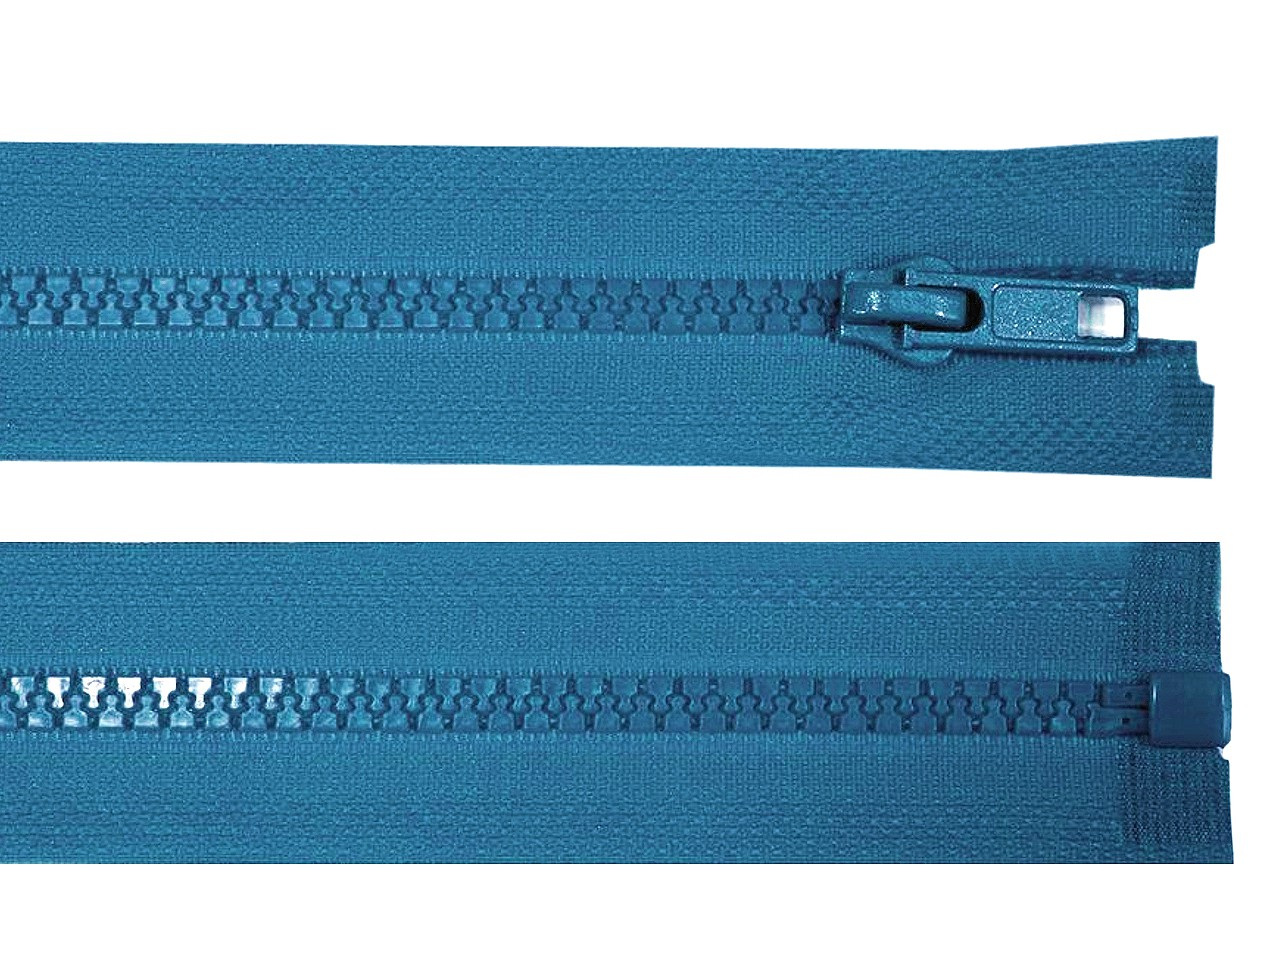 Kostěný zip No 5 délka 35 cm bundový, barva 216 modrá sytá